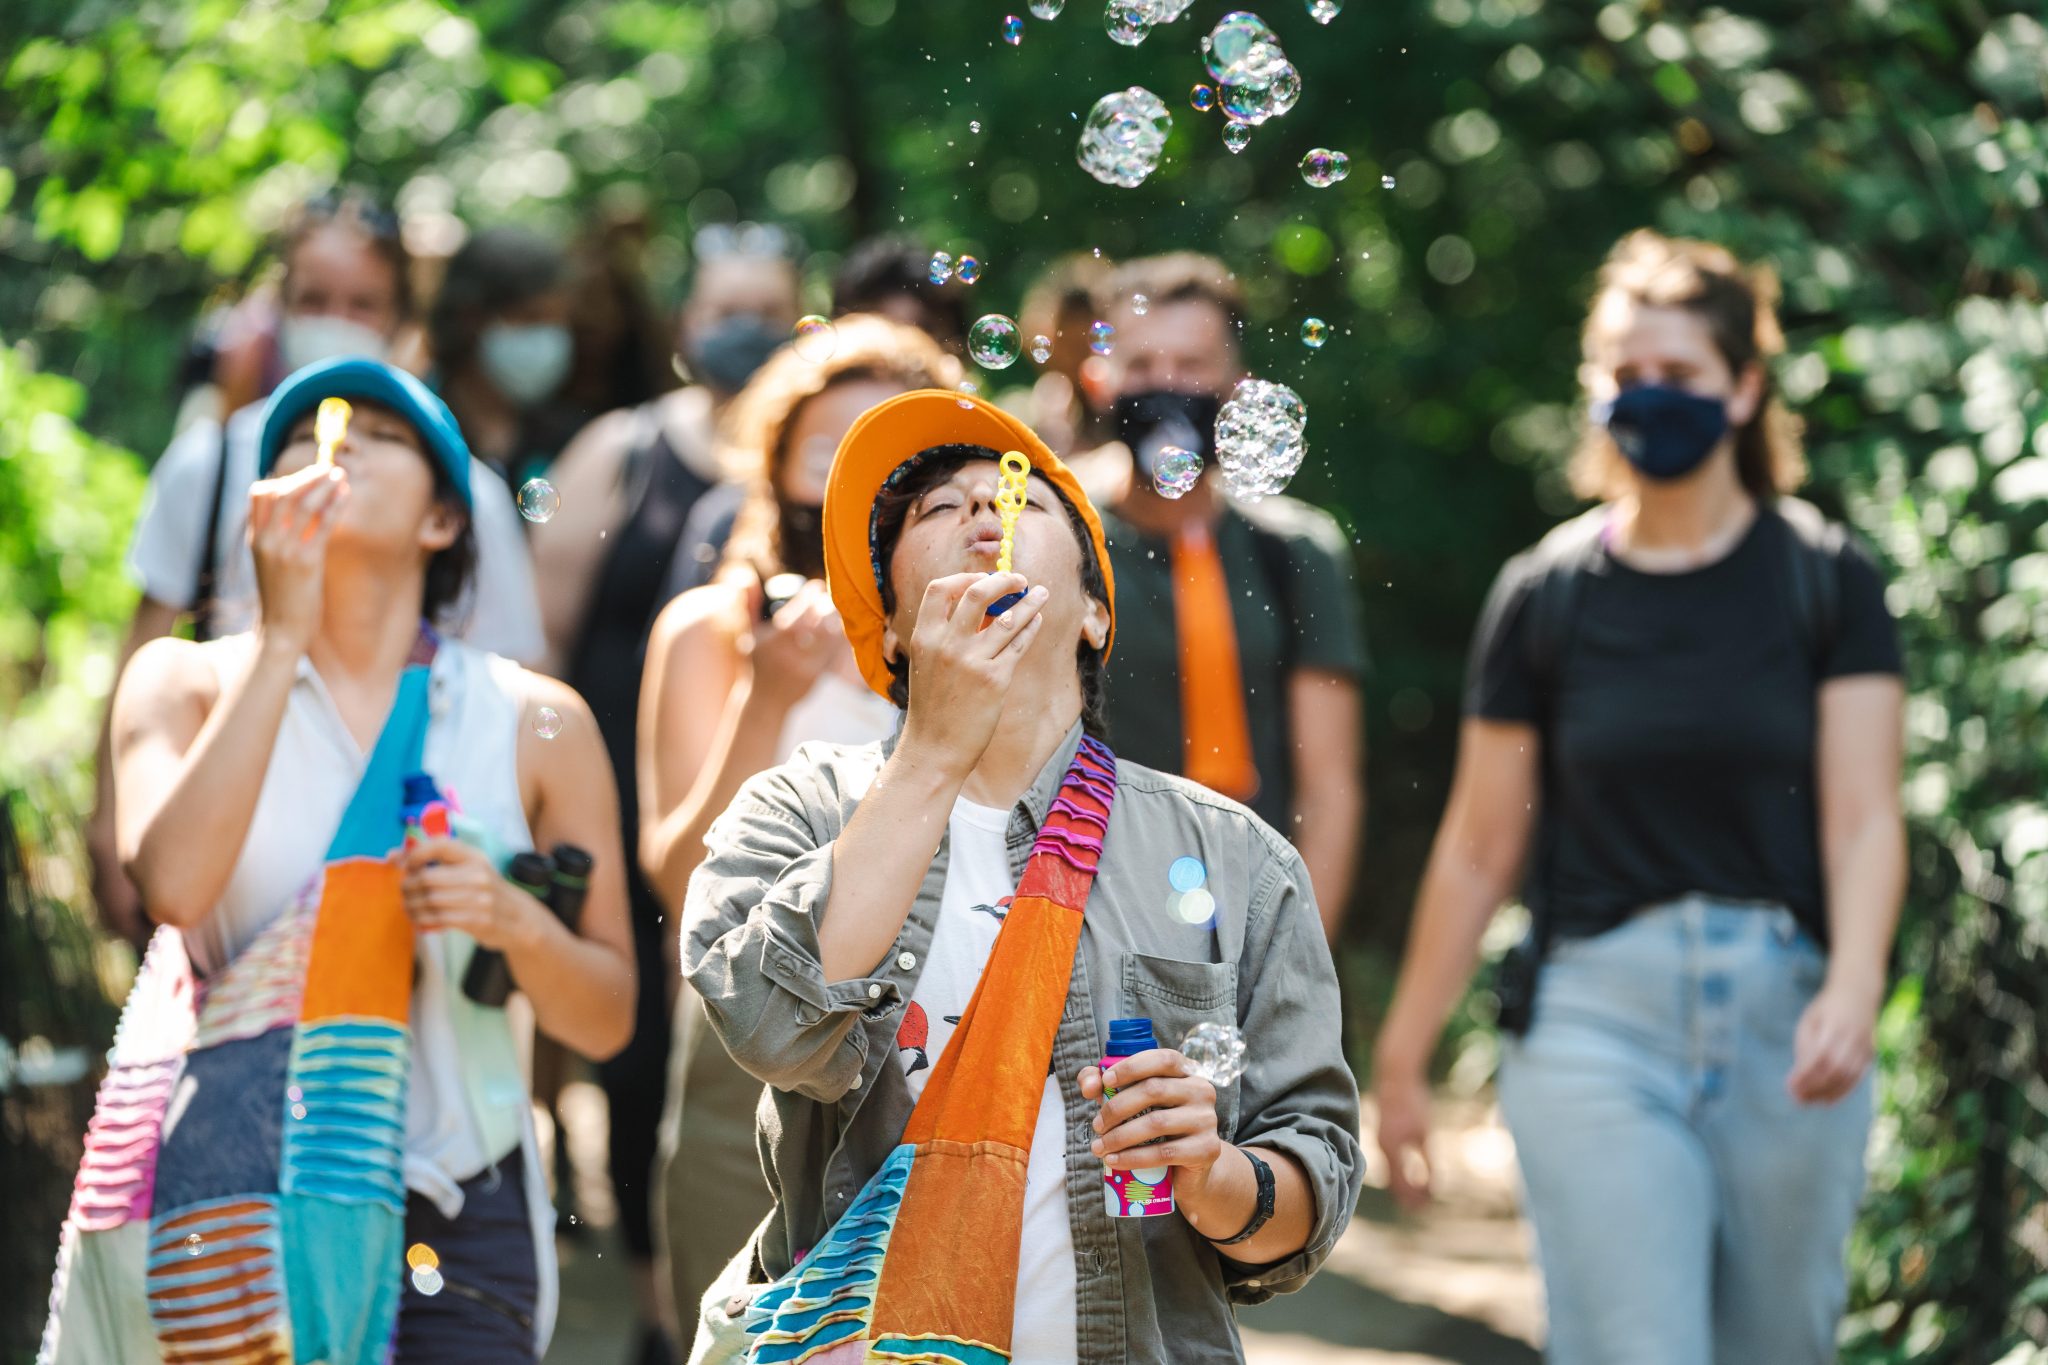 Otváracie podujatie projektu Climate Change Theatre Action 2021 s názvom Dispatch to the Future: A Theatrical Journey, ktoré sa konalo v Central Parku (New York). Foto: Yadin Goldman